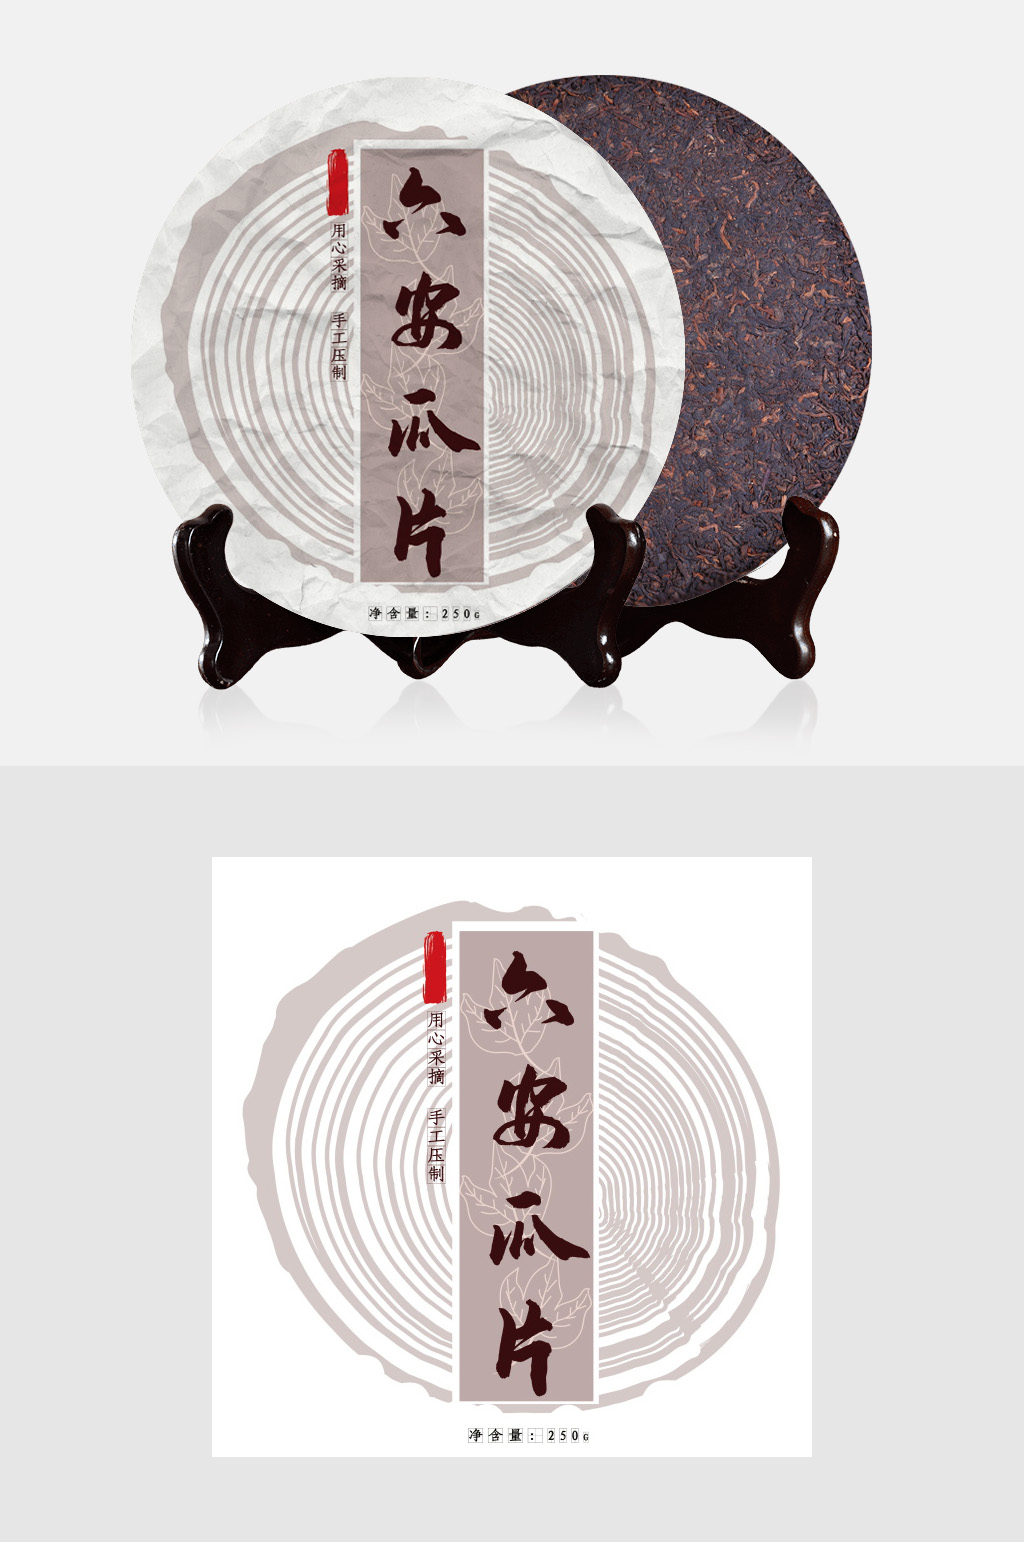 众图网独家提供六安瓜片普洱茶 茶饼包装素材免费下载,本作品是由泡面